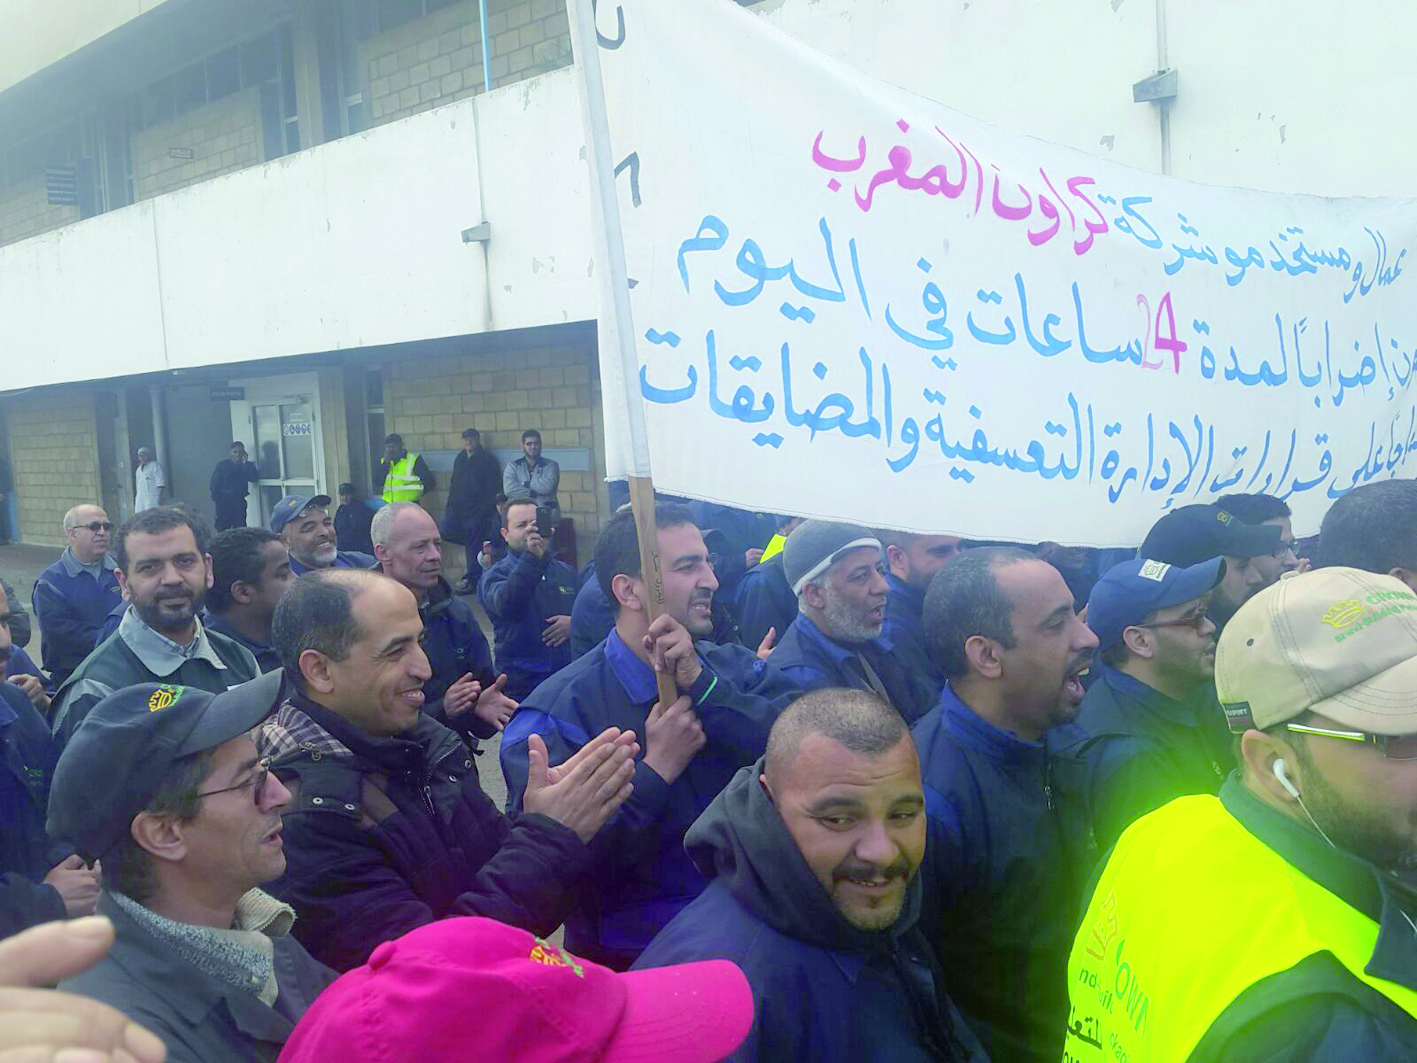 Les autorités locales tentent de casser la grève à Carnaud